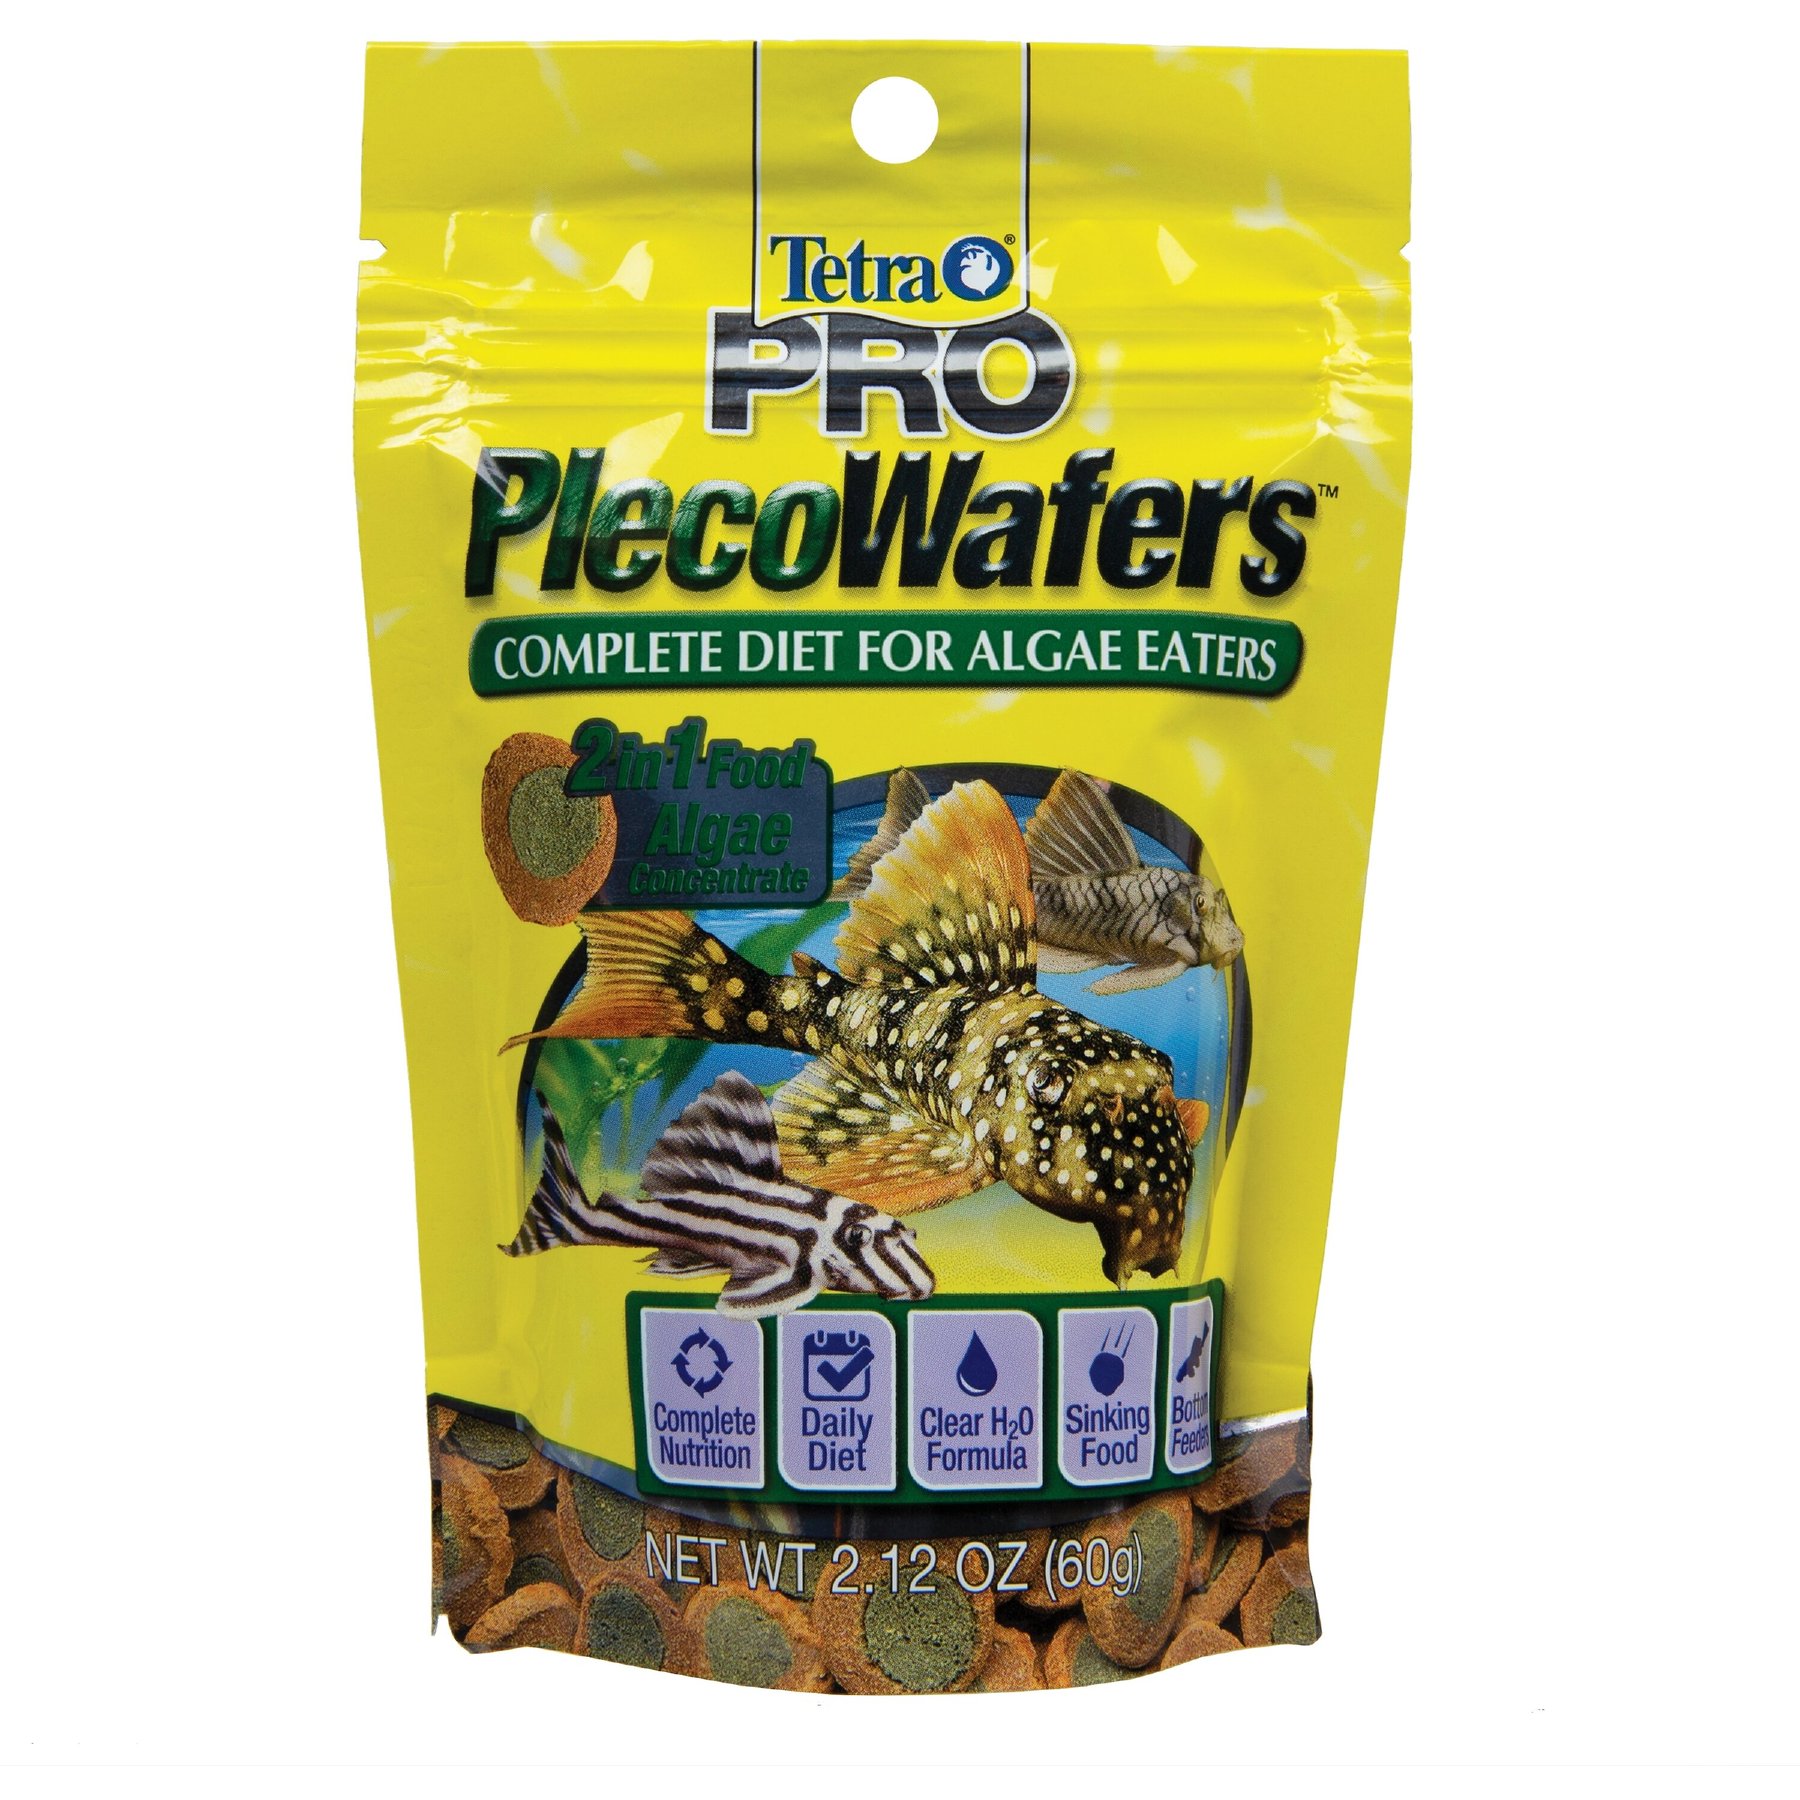 Tetra TetraMin Flakes tropical fish food for most types of tropical fish —  Clarity Aquatics - Premium Aquatics Goods and Services